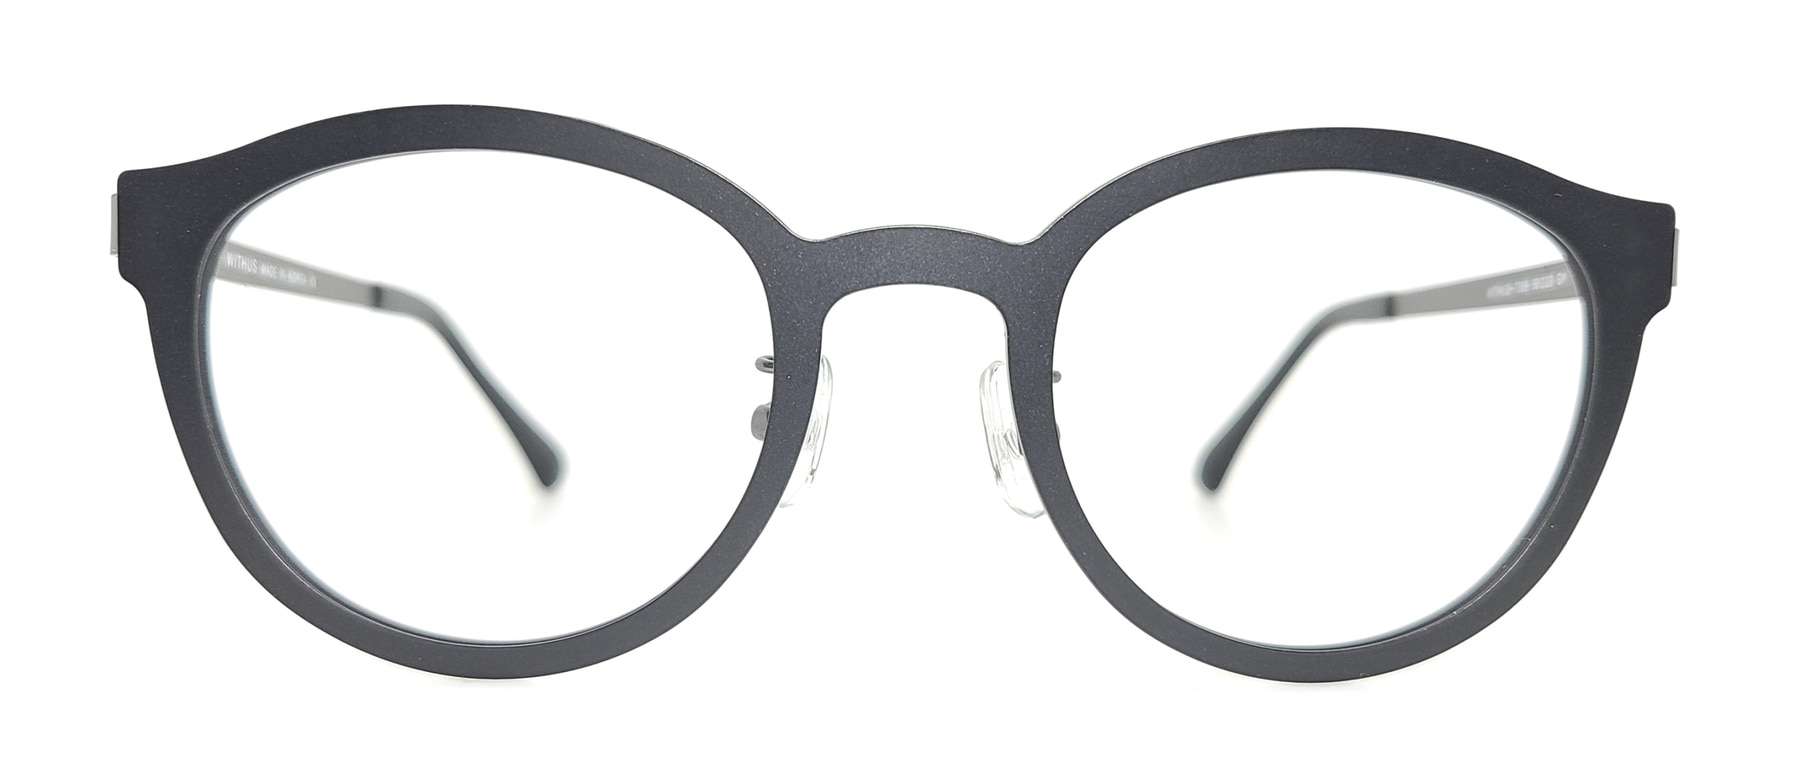 WITHUS-7305, Korean glasses, sunglasses, eyeglasses, glasses